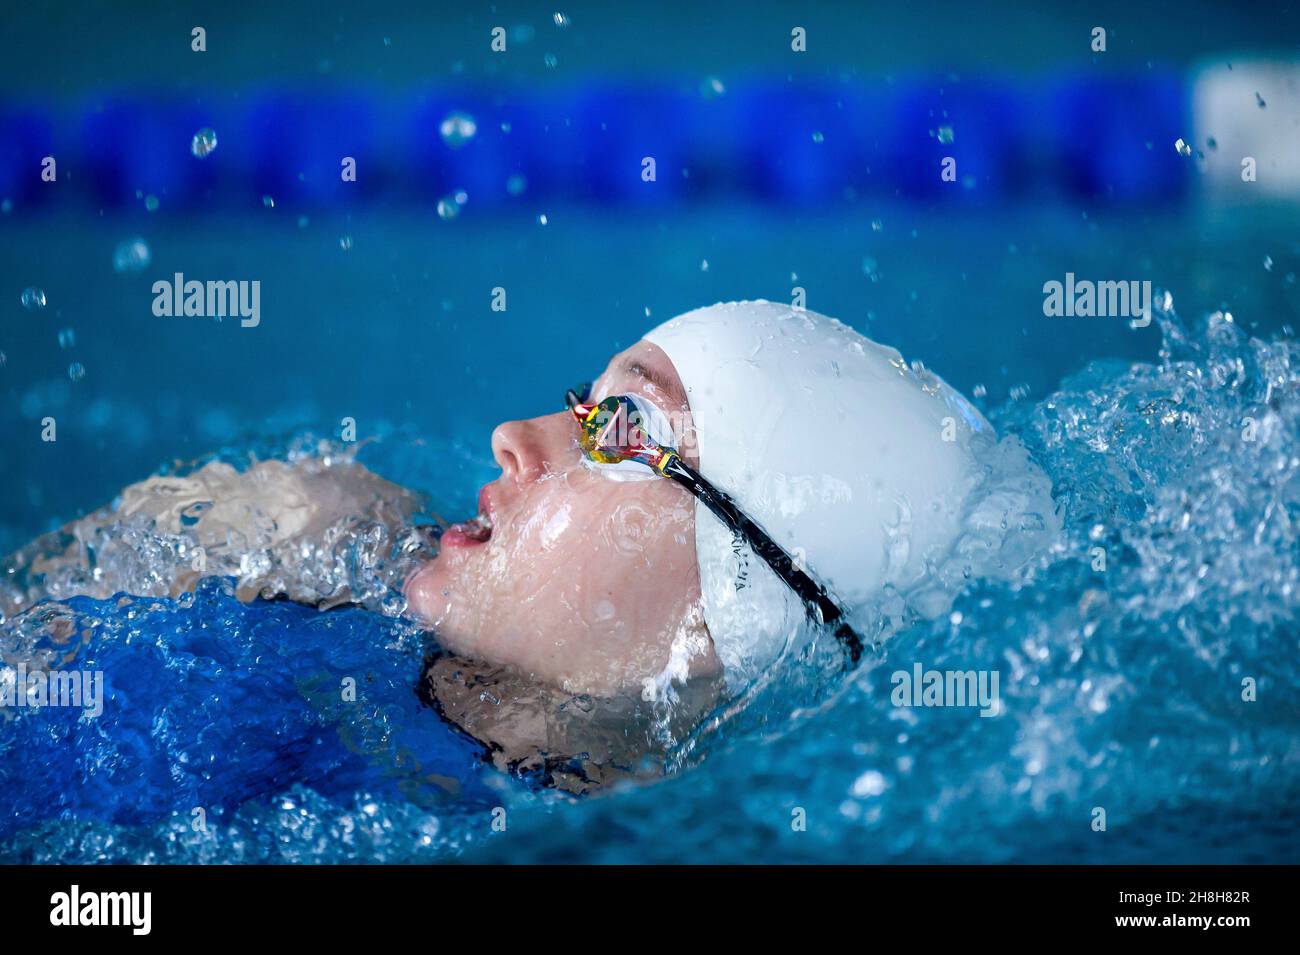 backstroke swimmer in the swiming pool Stock Photo